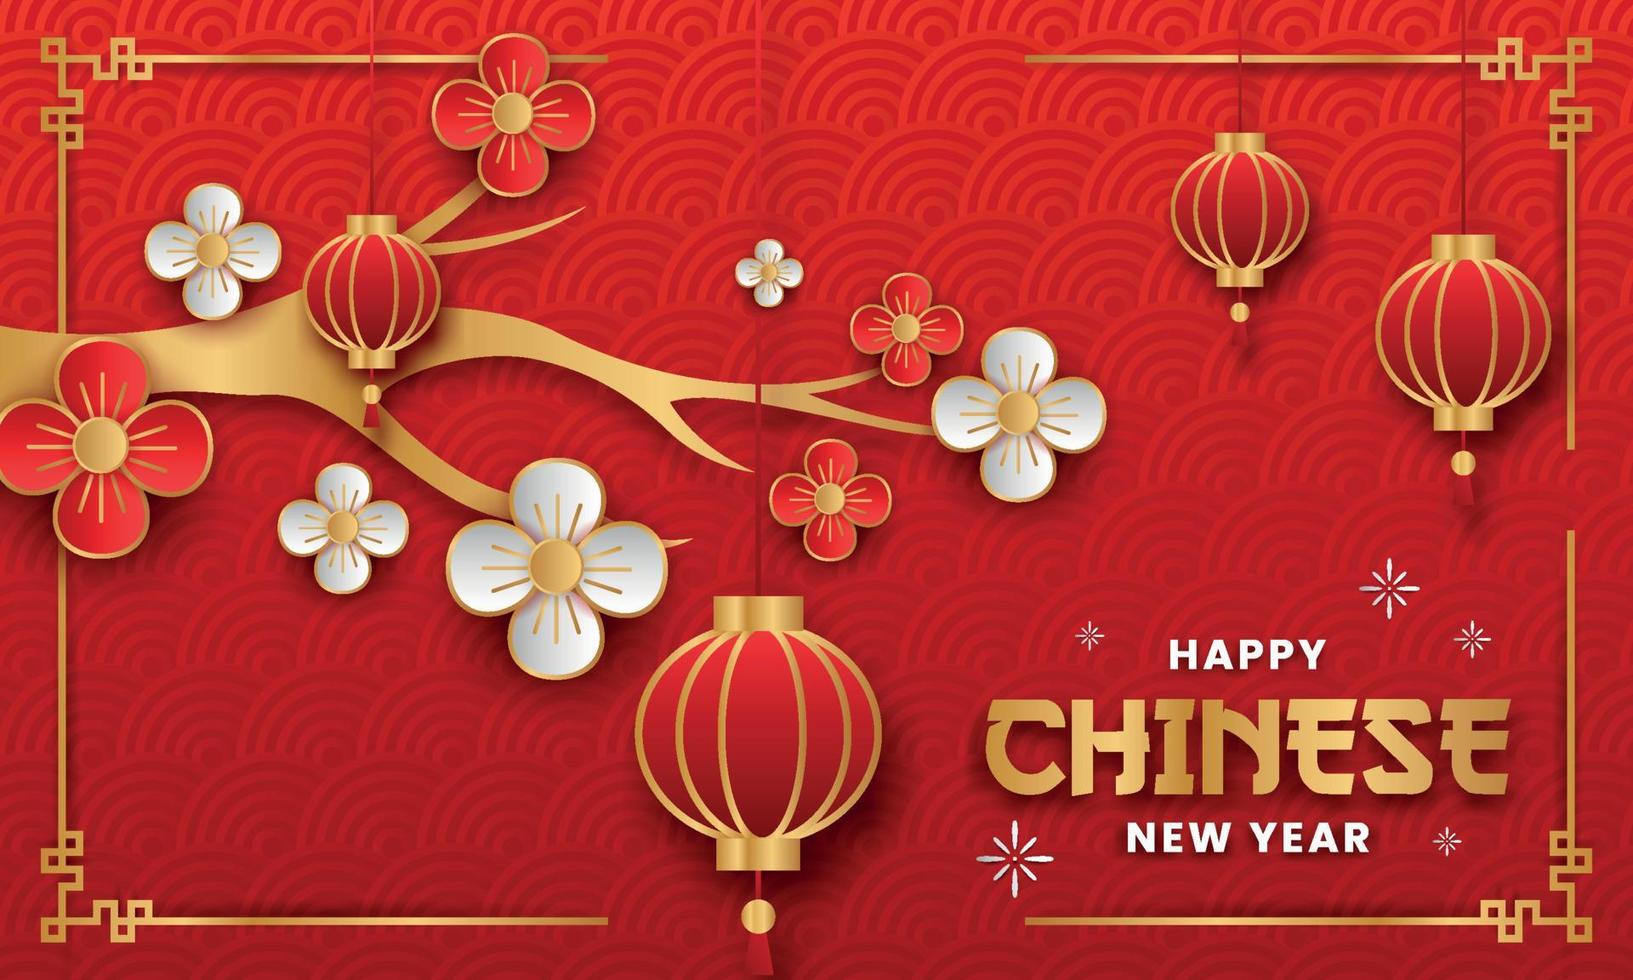 feliz año nuevo chino estilo papel diseño vectorial. volante o afiche del año nuevo chino con farolillos y nubes chinas temáticas. vector